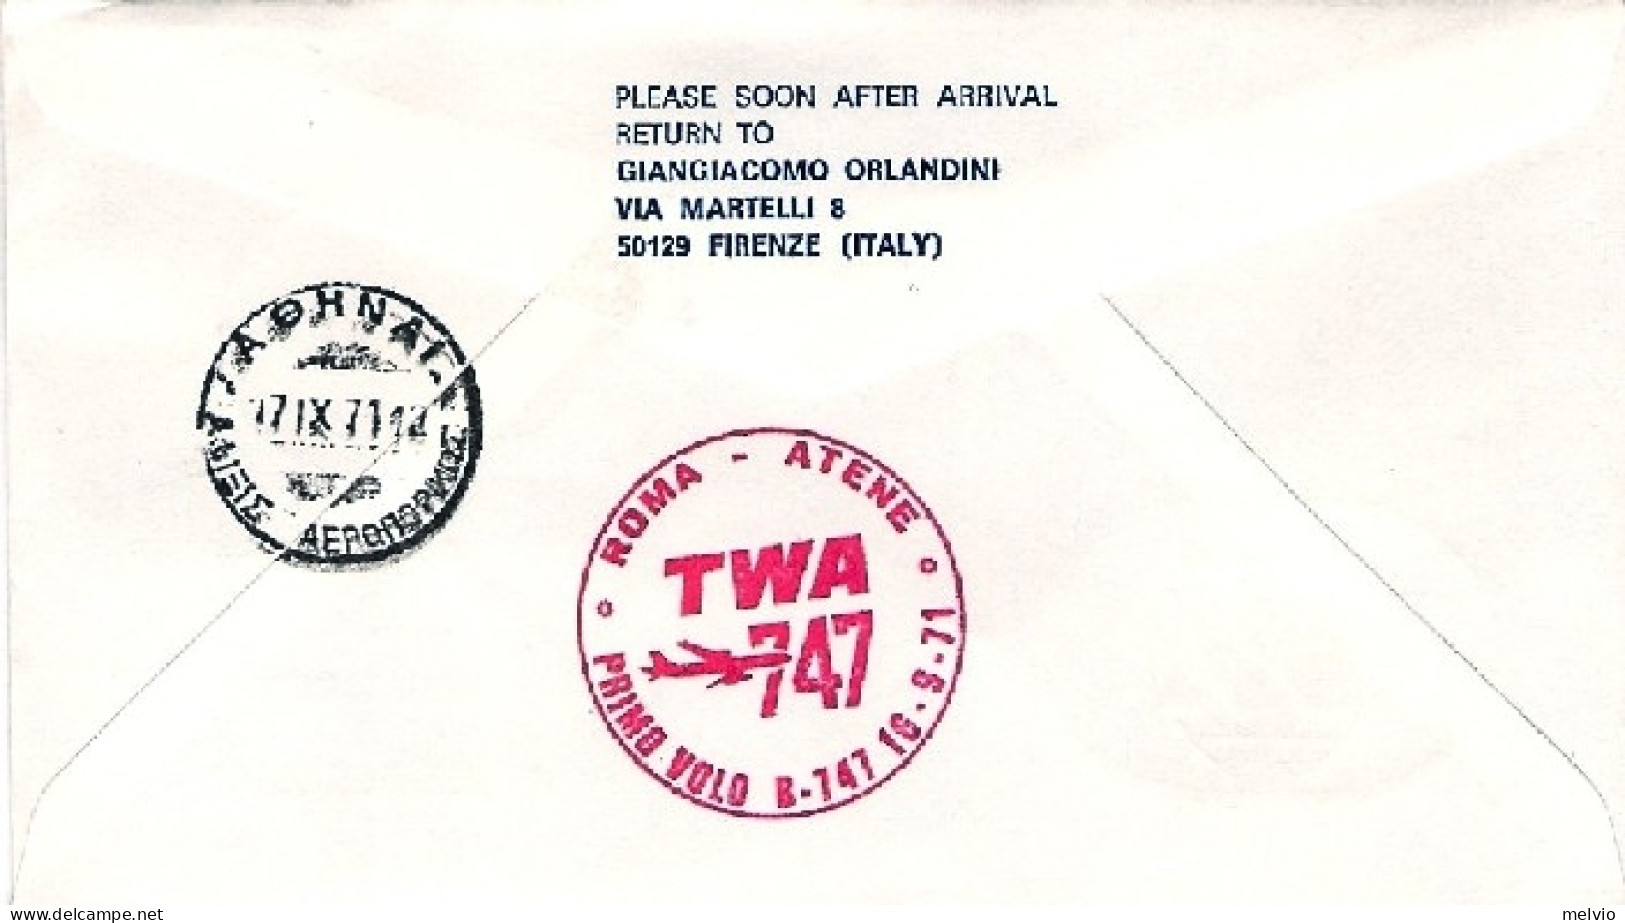 1971-della TWA I^volo Boeing 747 Roma-Atene - Airmail